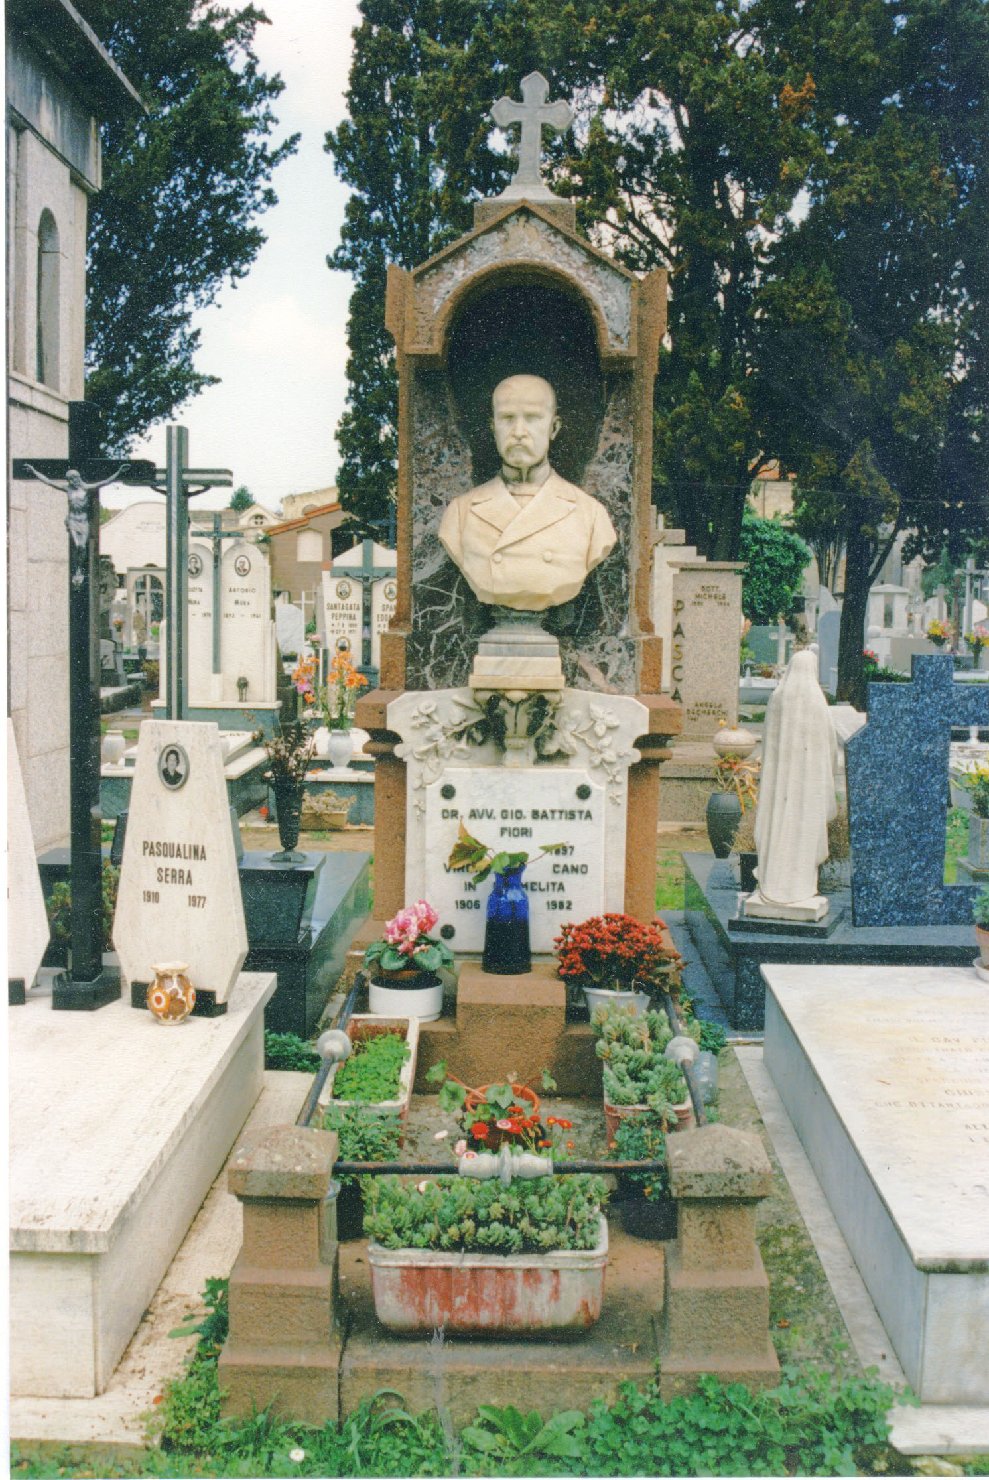 Ritratto di giovanni battista fiori, busto ritratto d'uomo (monumento funebre)